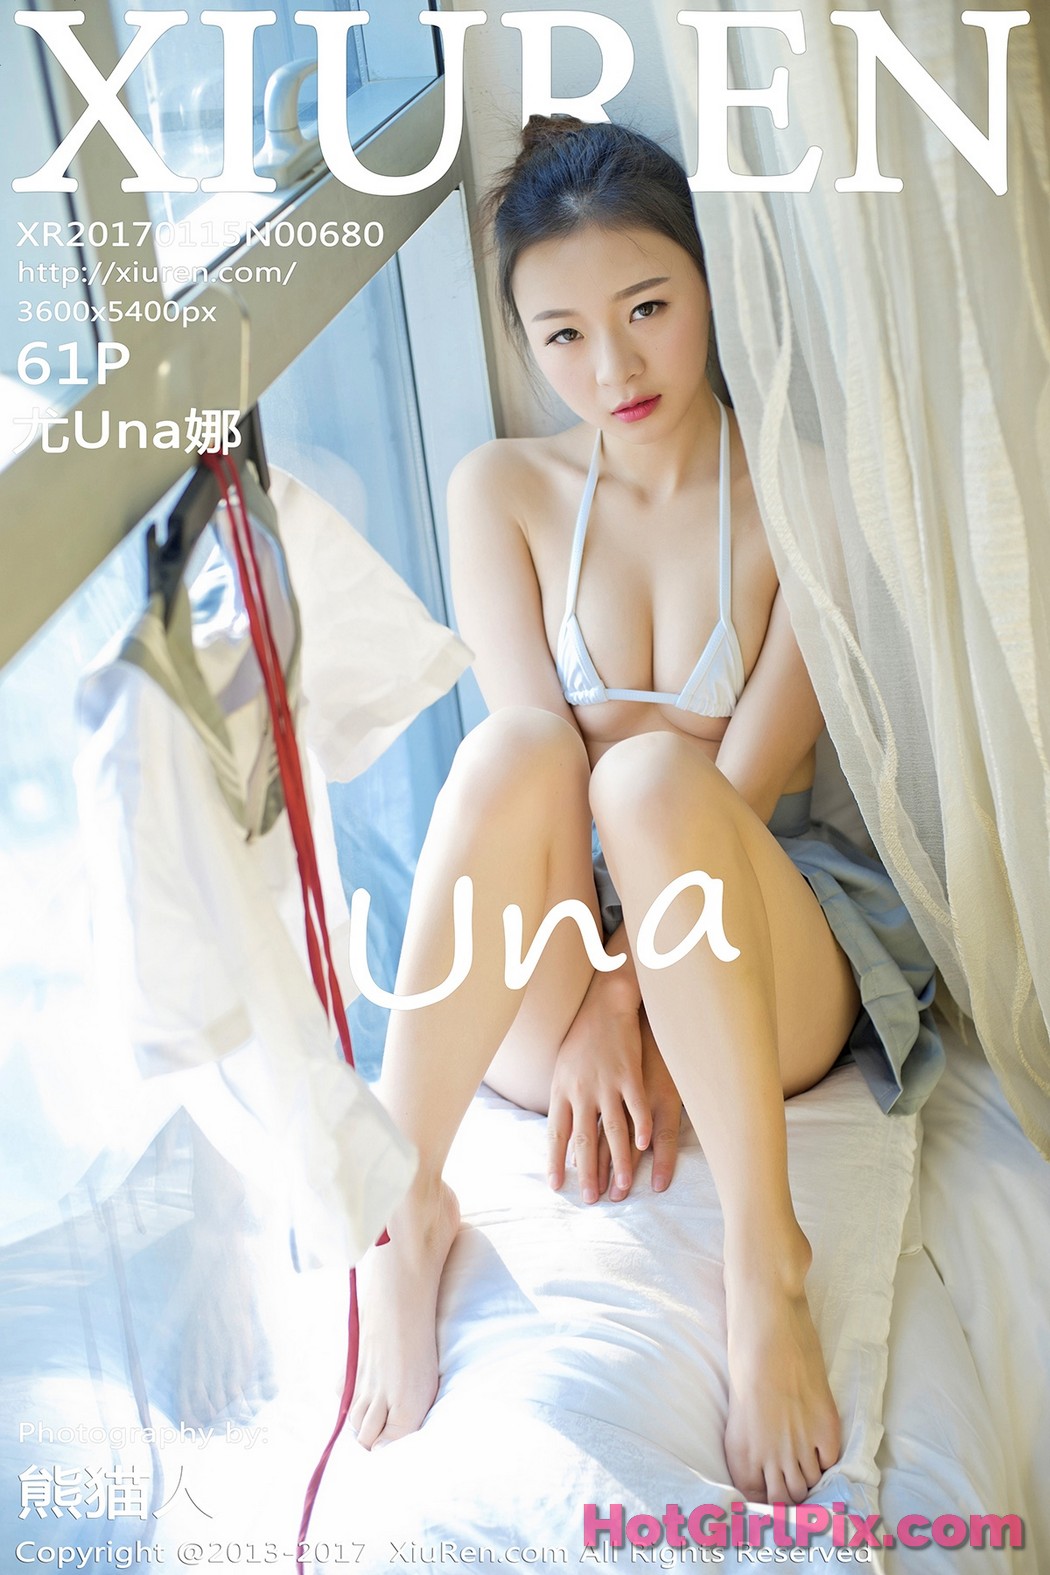 [XIUREN] No.680 Una 尤娜 Cover Photo